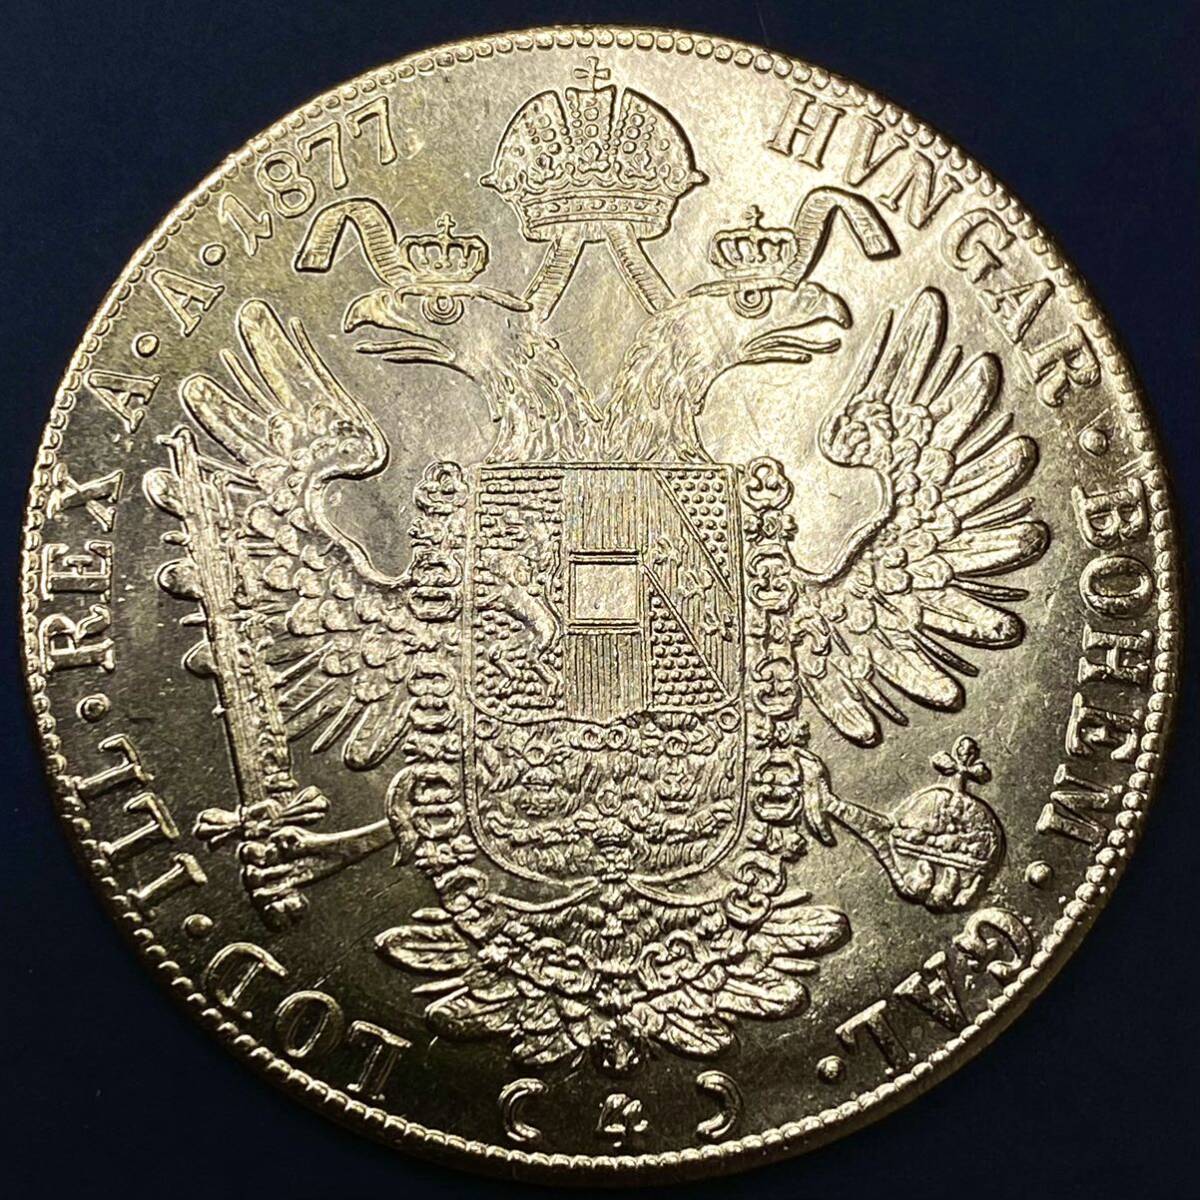 金貨 オーストリア帝国 硬貨 古銭 約15.15g フランツ・ヨーゼフ 1 世 1877年 クラウン 国章 紋章 双頭の鷲 4ダカット コイン 海外硬貨 の画像2